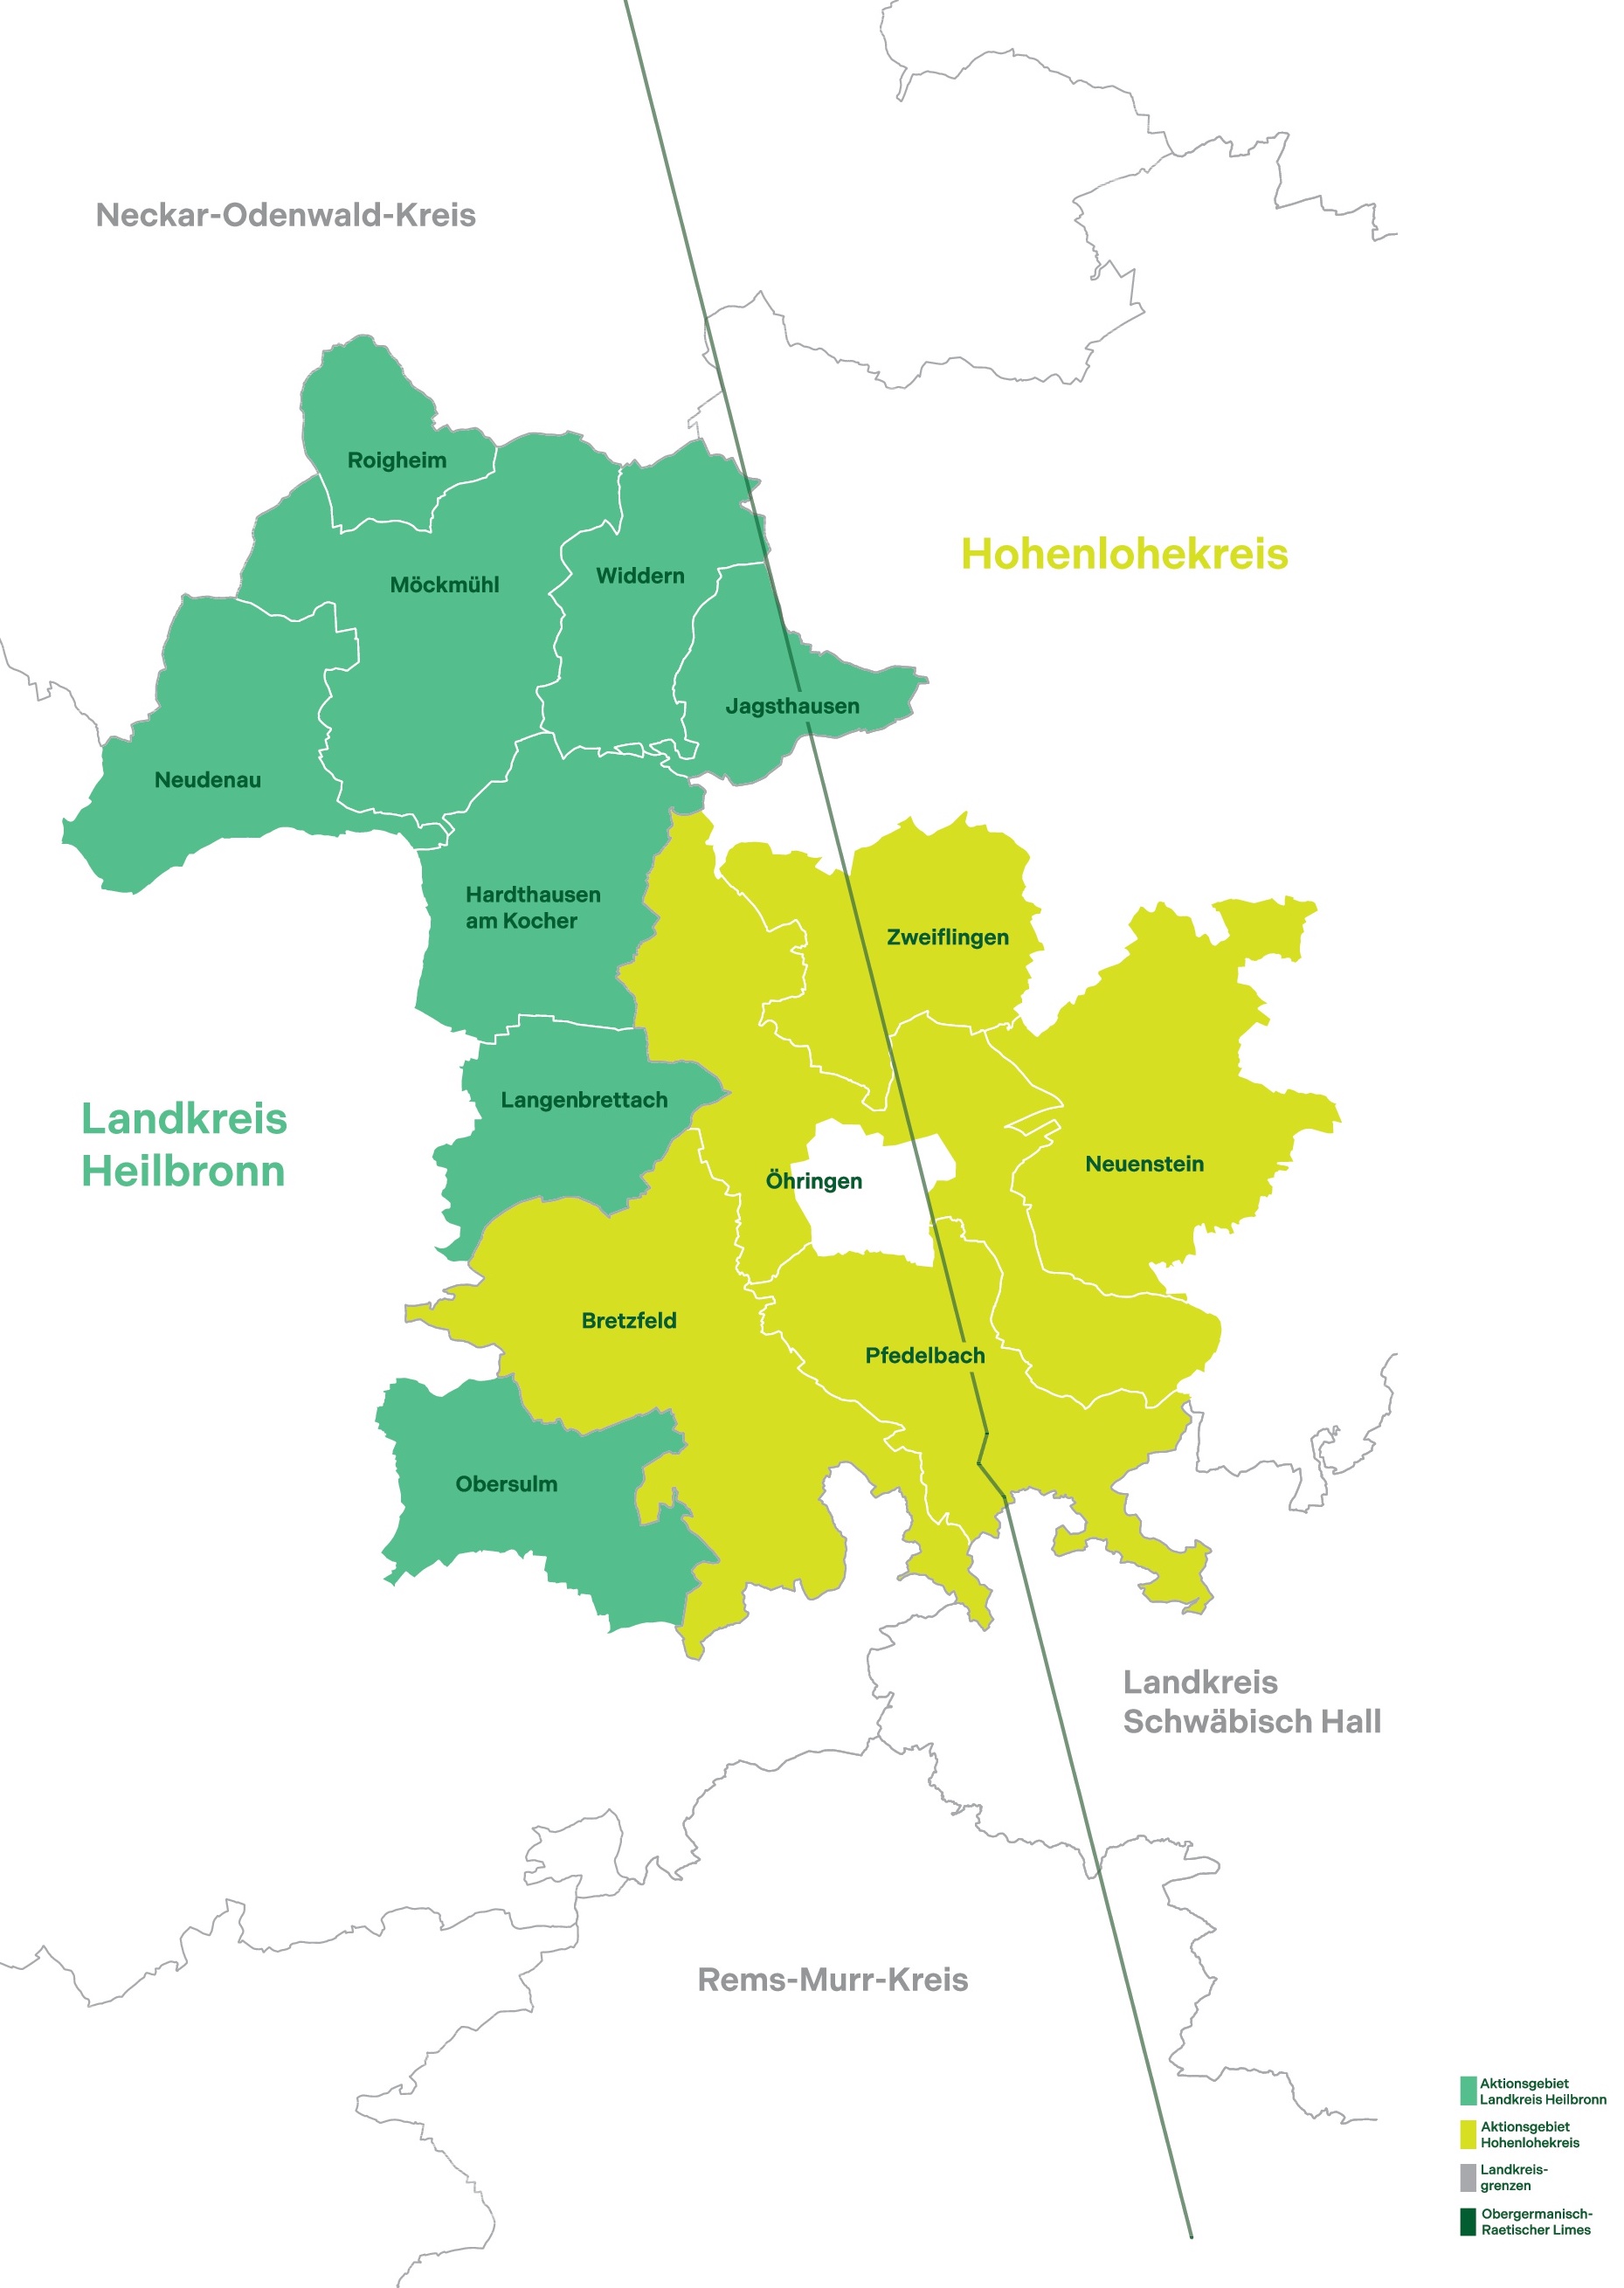 Landkarte in unterschiedlichen Grüntönen, die die LEADER-Region veranschaulicht.